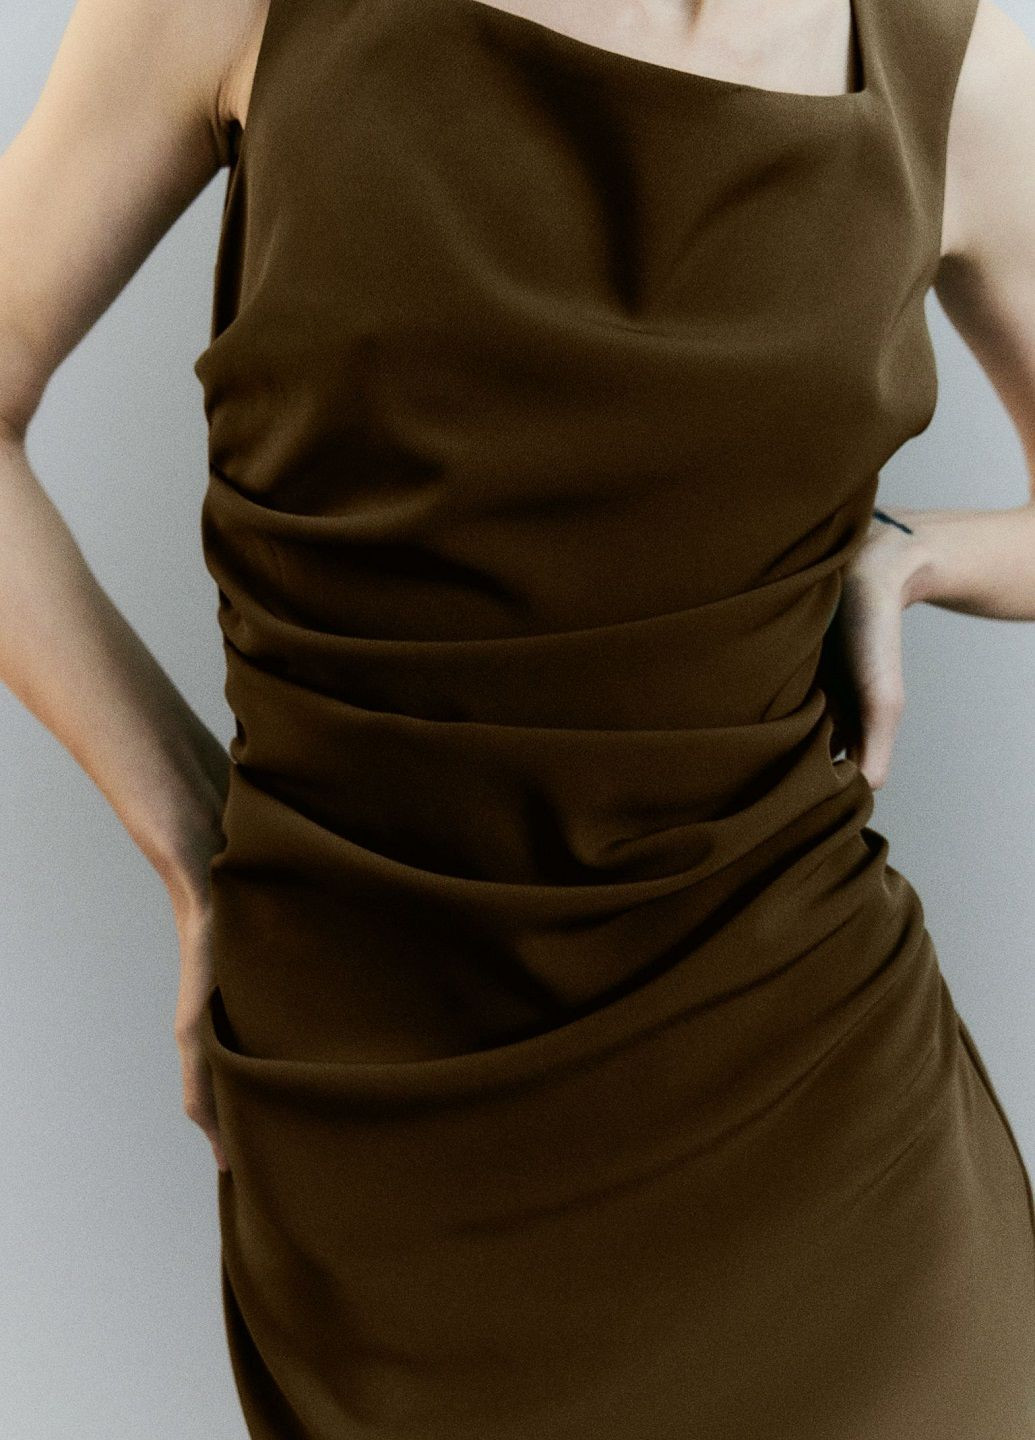 Оливковое (хаки) деловое платье H&M однотонное